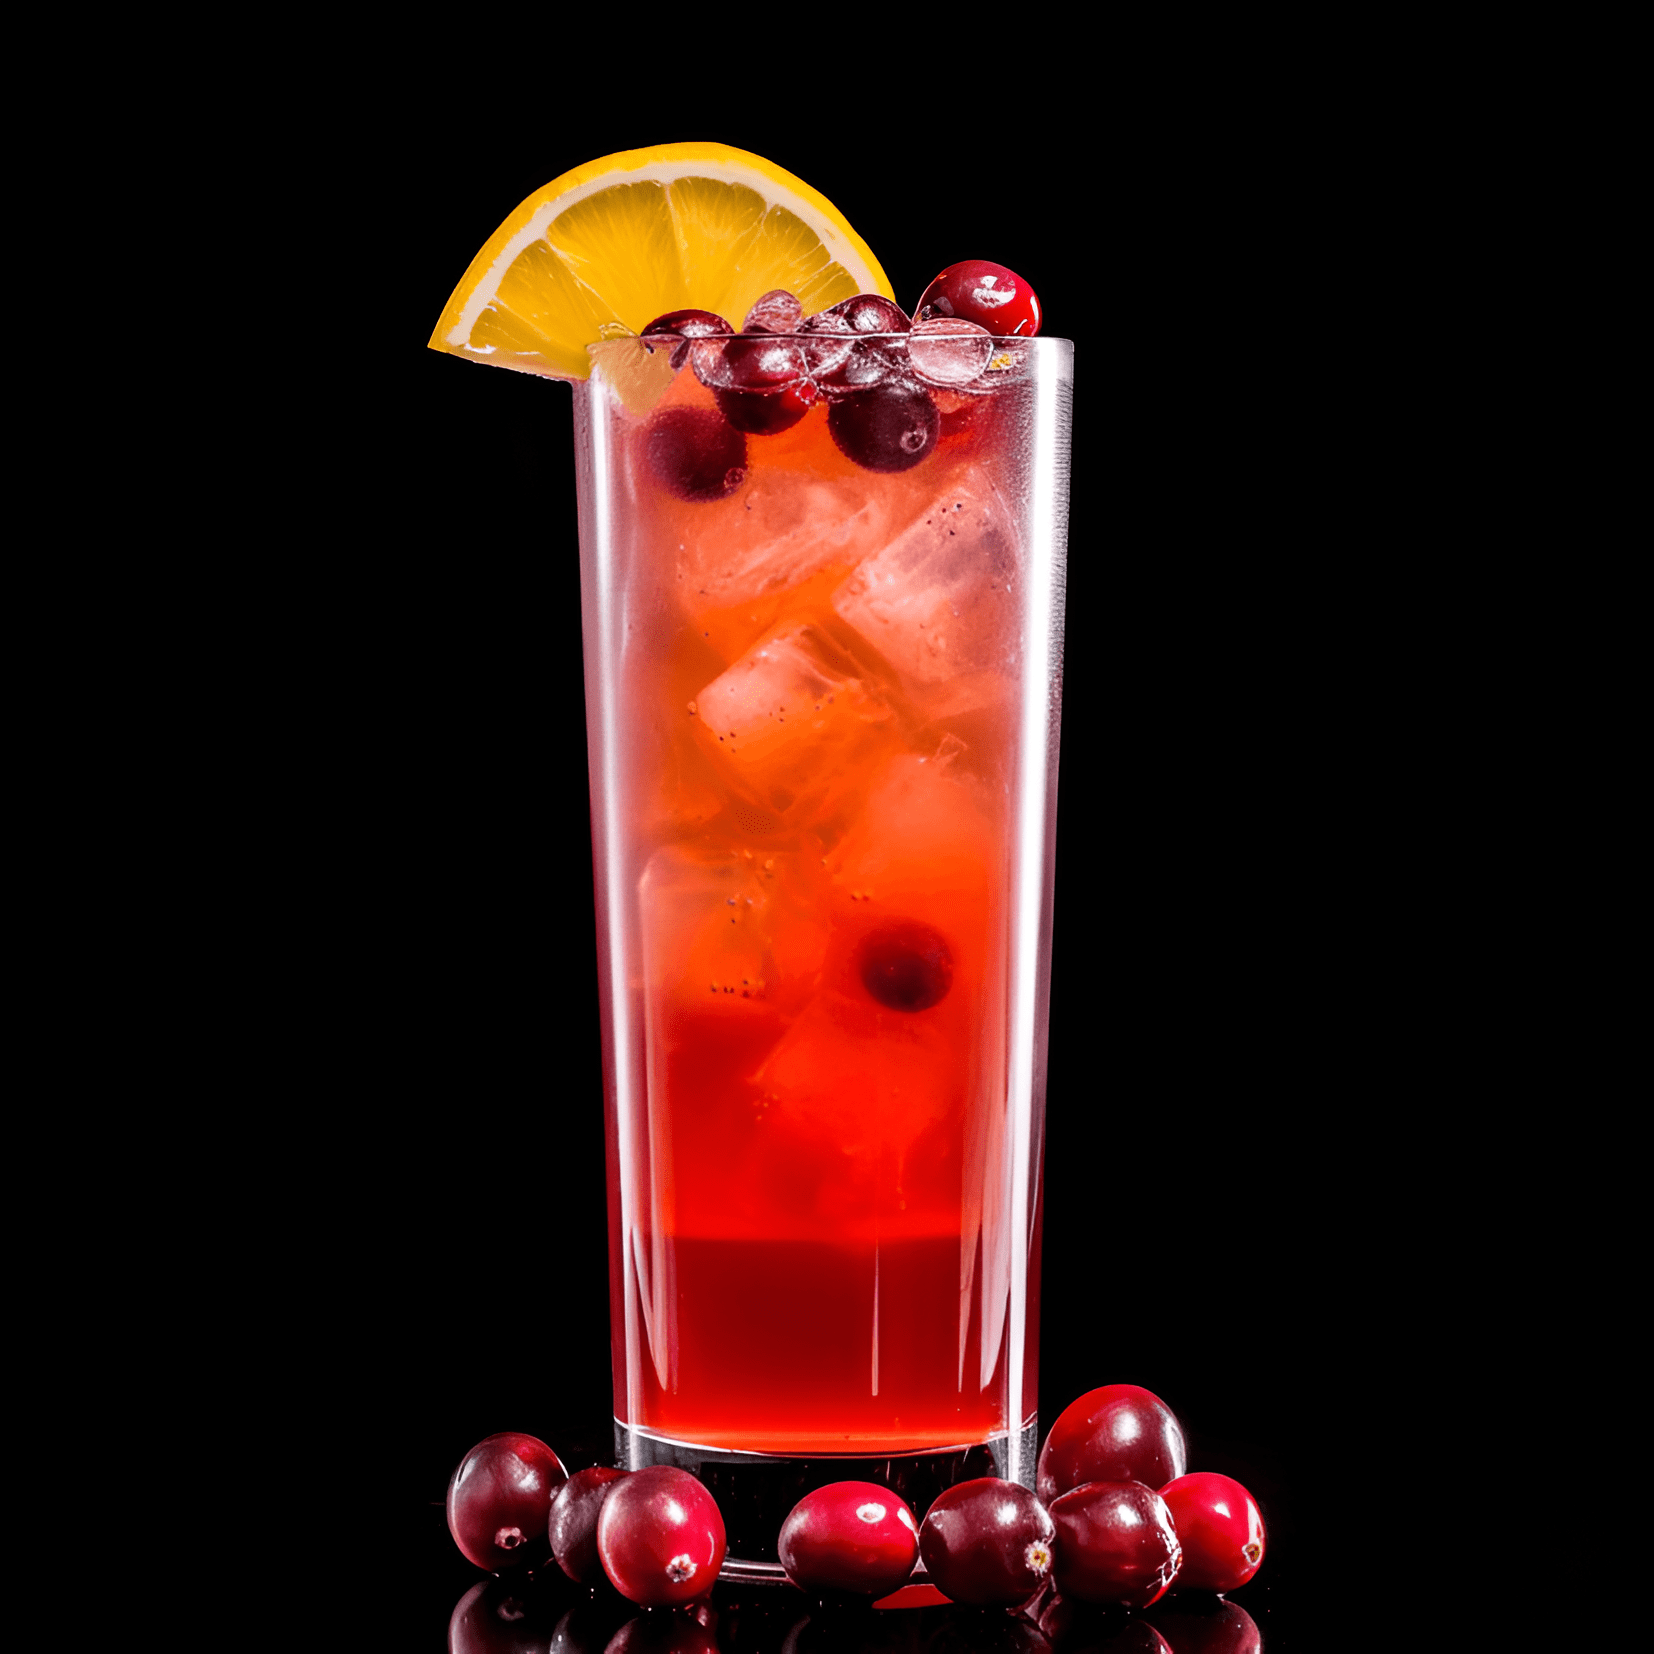 Cranberry Cooler Cóctel Receta - El Cranberry Cooler tiene un equilibrio delicioso de sabores dulces y ácidos, con un sabor refrescante y crujiente. La combinación de jugo de arándano, jugo de naranja y refresco de limón y lima crea una sensación afrutada y picante, mientras que el vodka agrega un toque sutil.